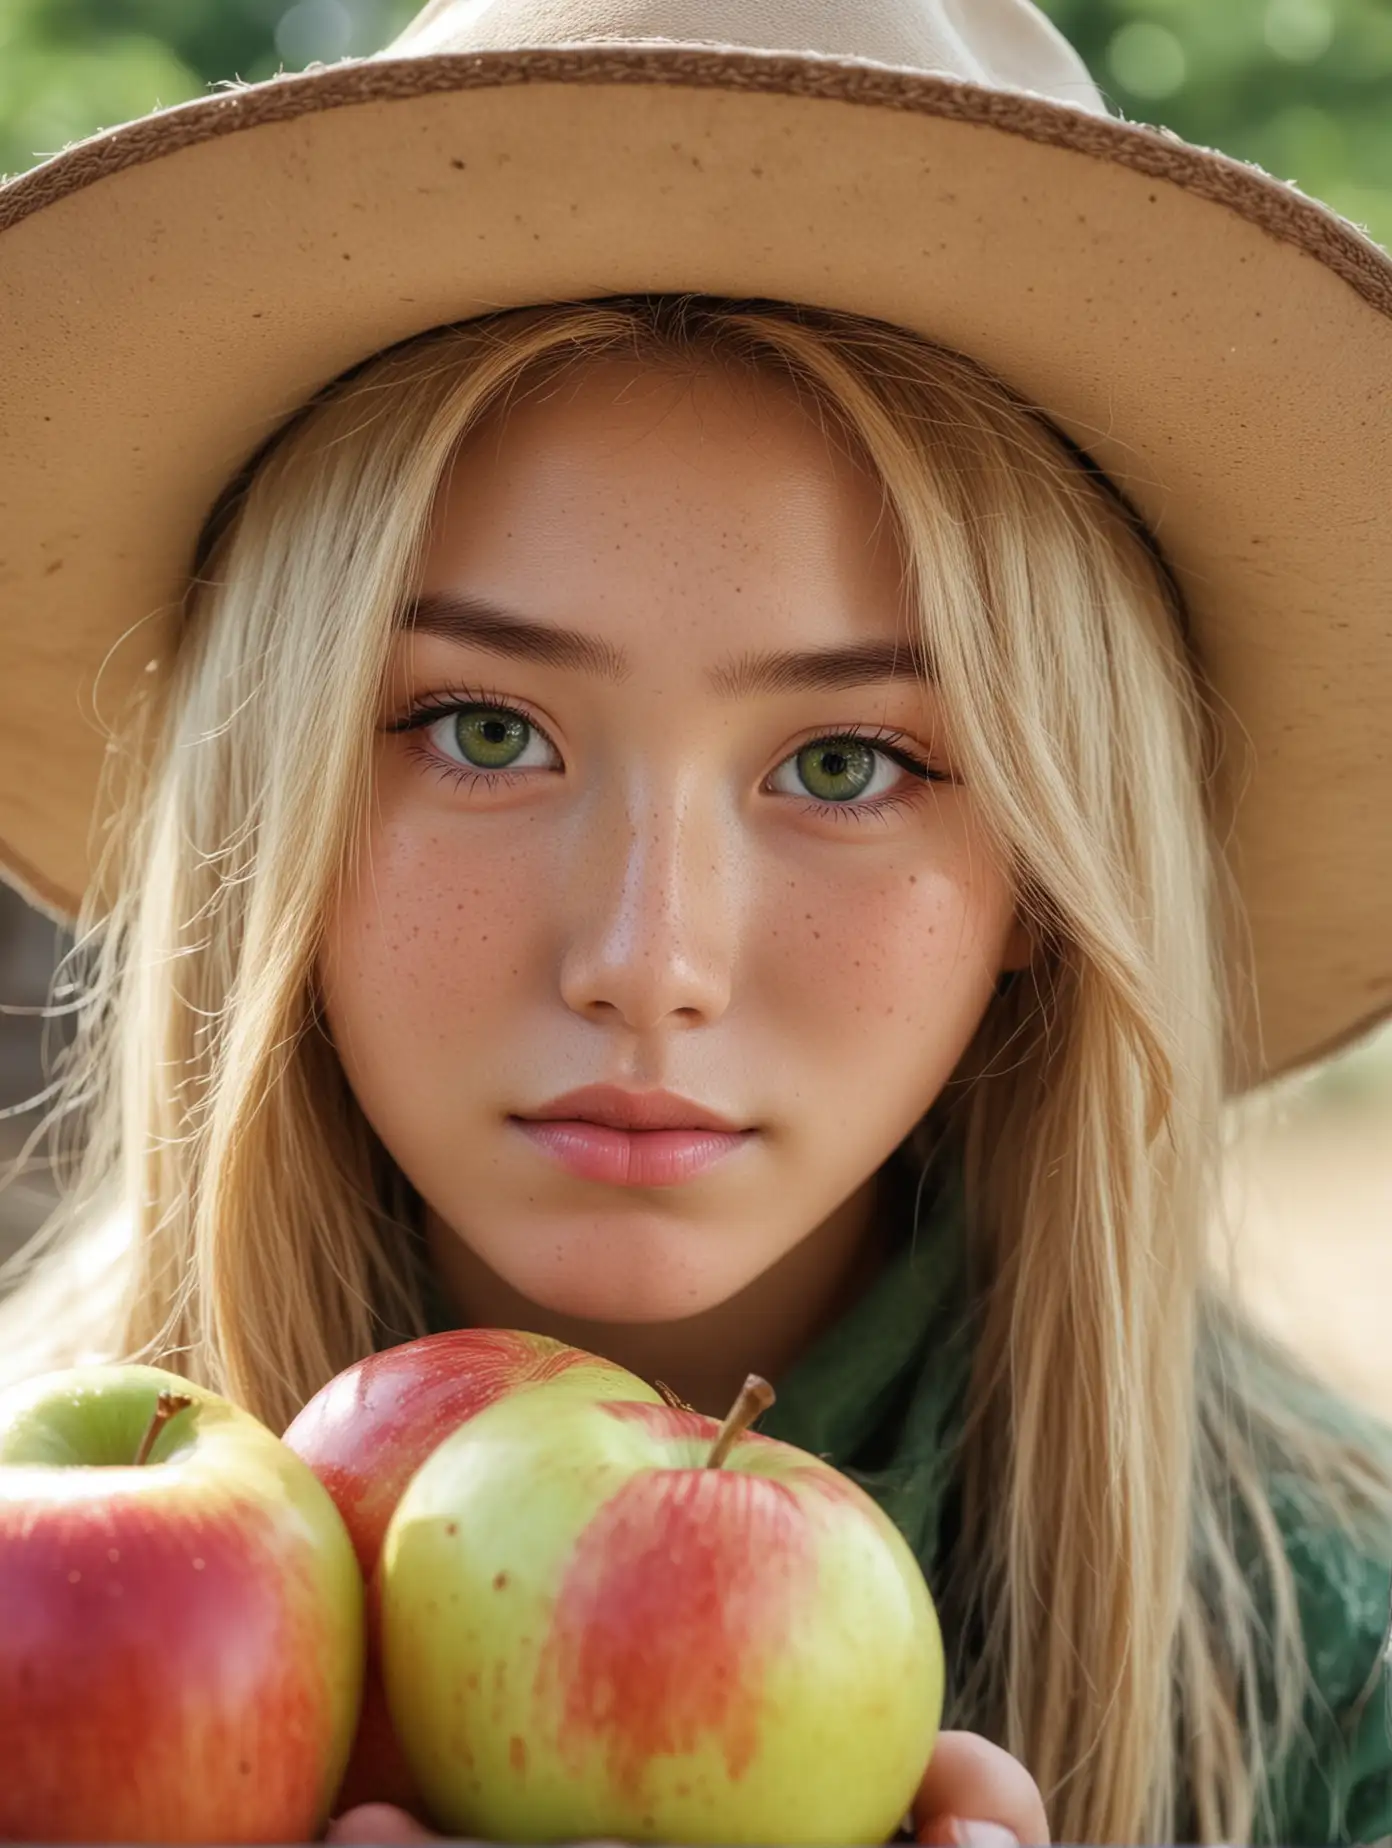 Девушка из Японии, крупная, блондинка, веснушки, шляпа ковбоя, зелёные глаза, деревня, яблоки, честные глаза